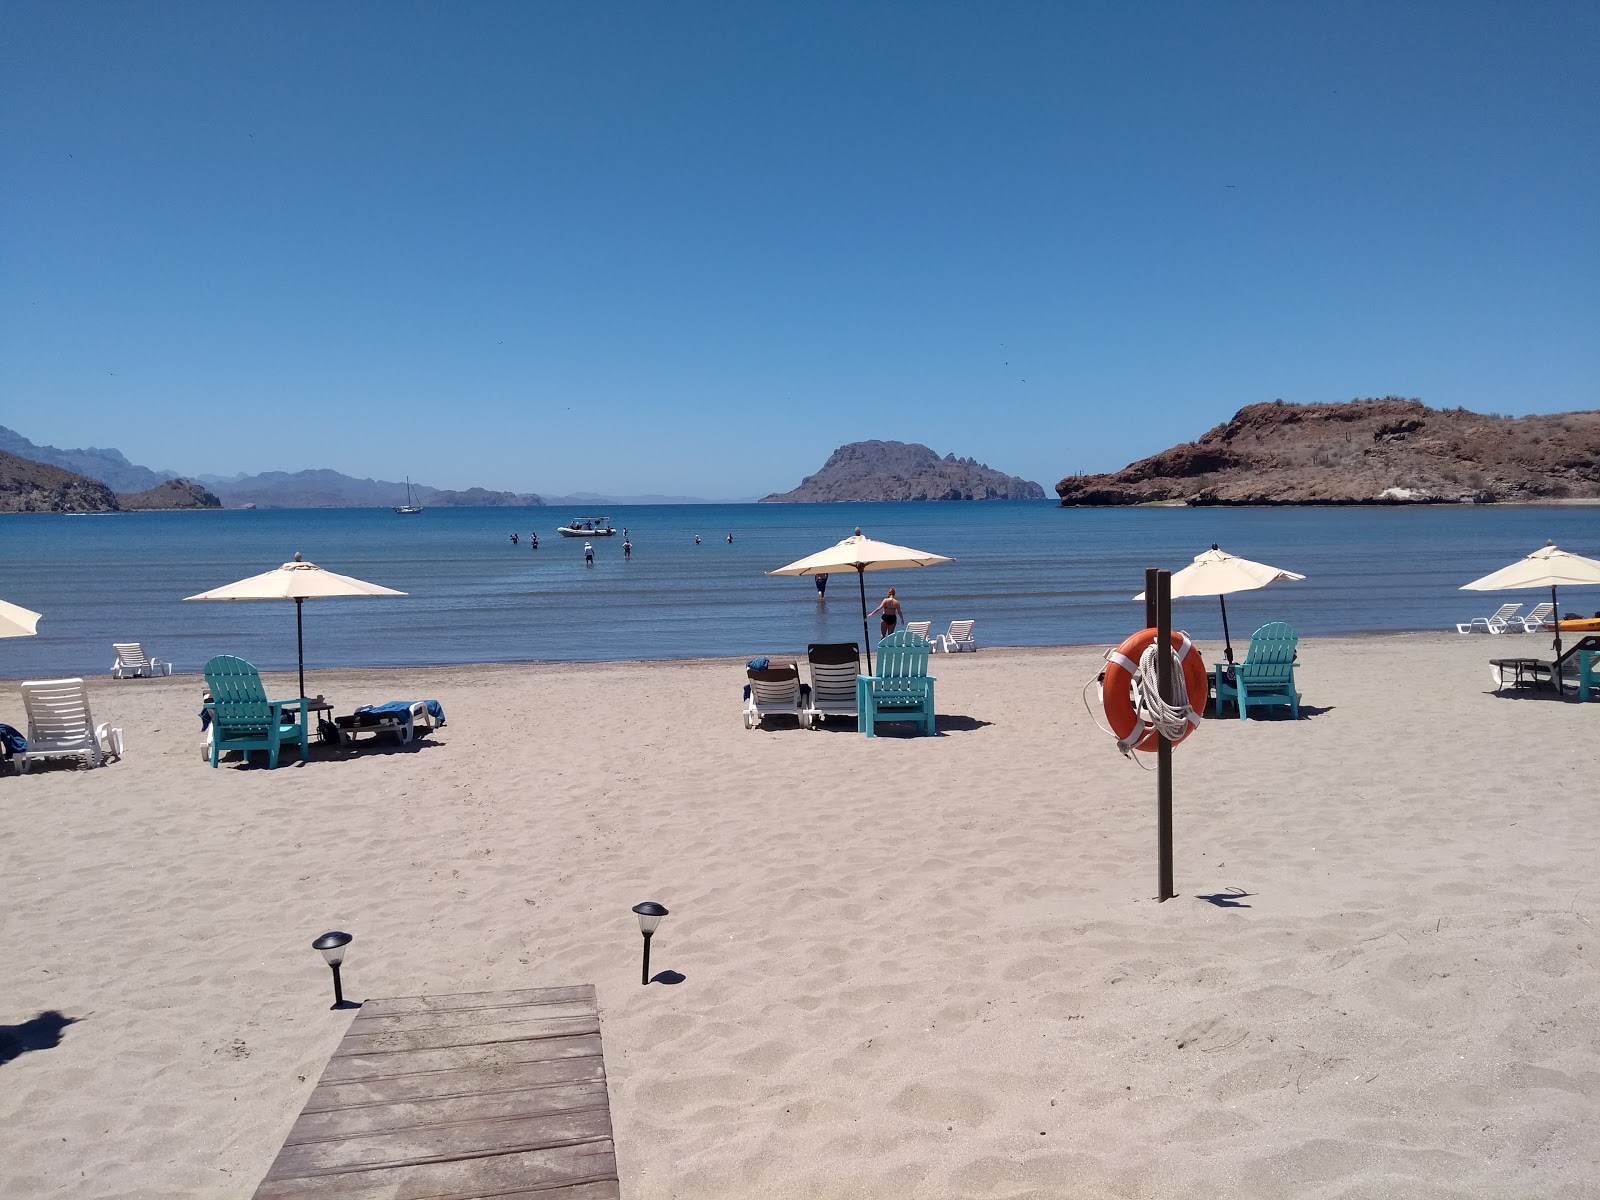 Playa Ensenada Blanca'in fotoğrafı parlak ince kum yüzey ile